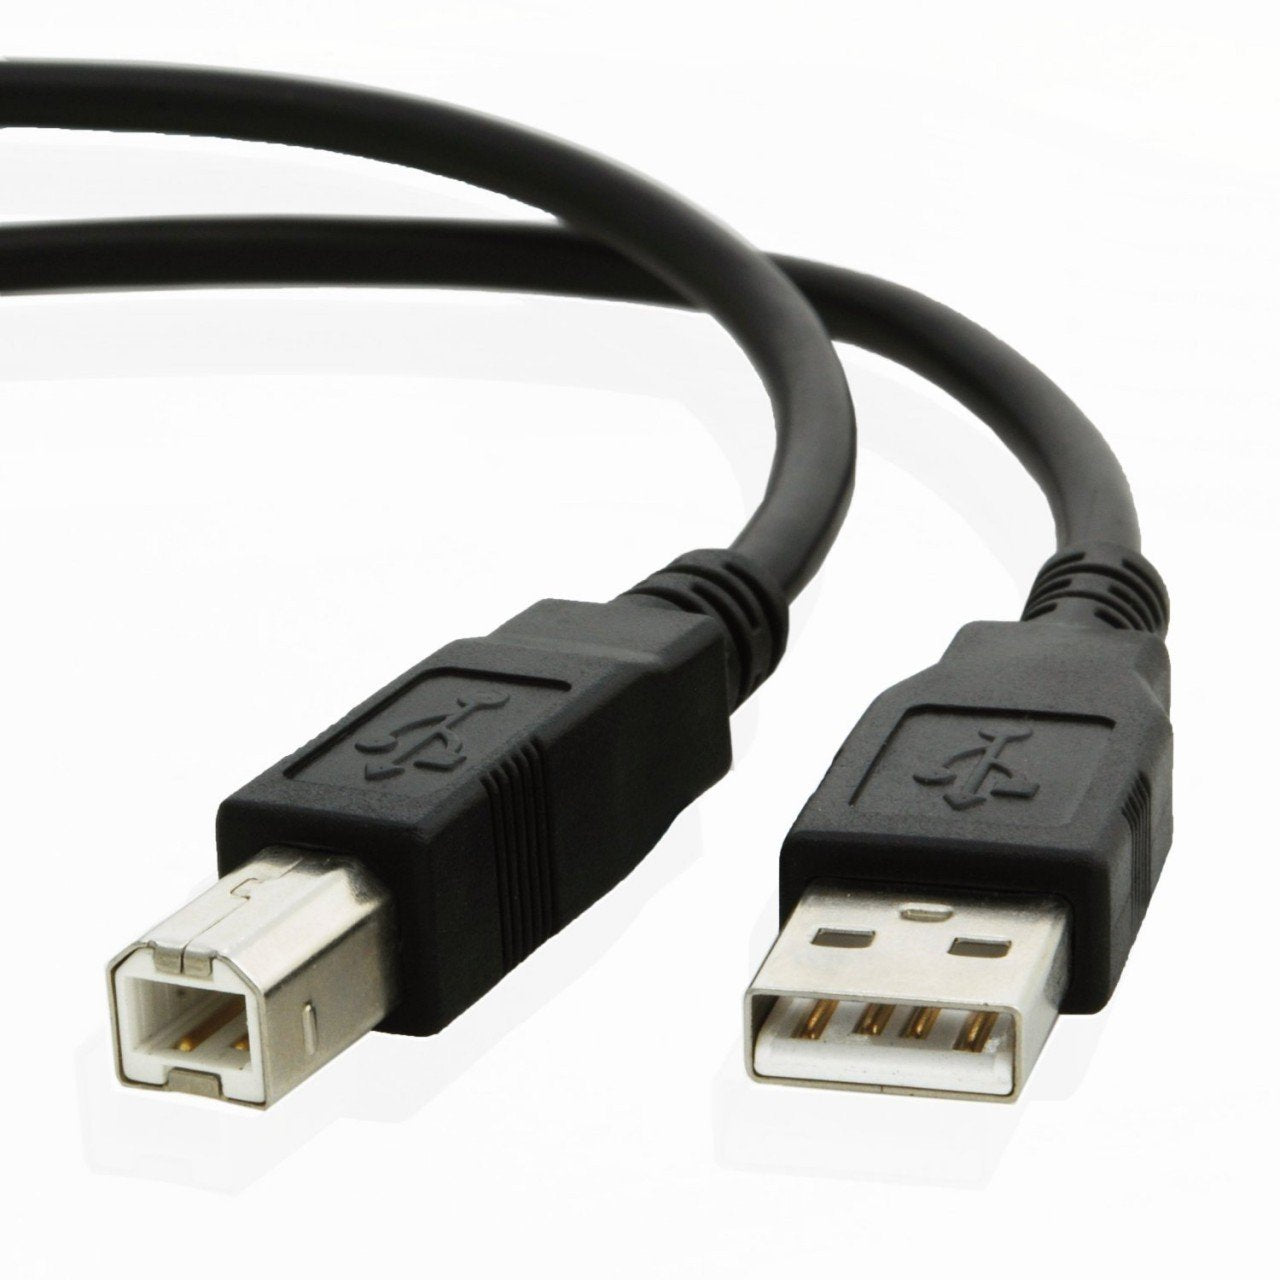 USB cable for Dell E525W